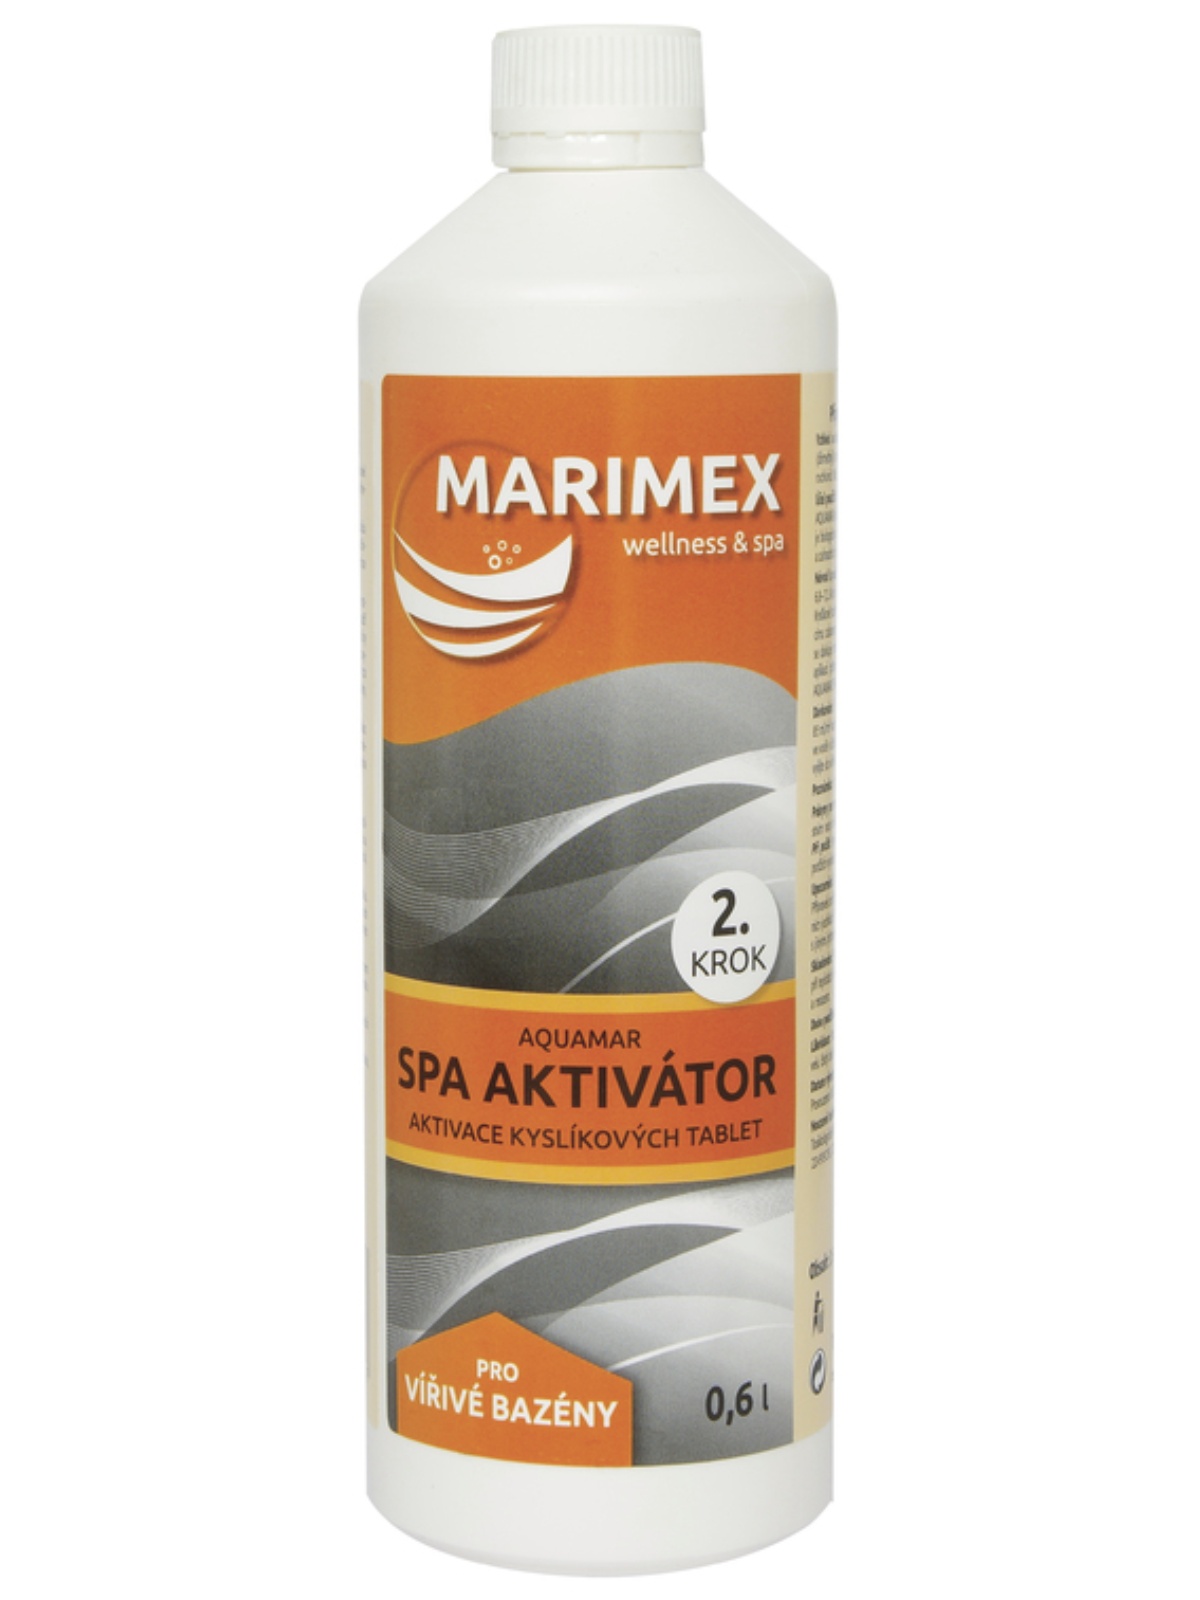 MARIMEX Aquamar Spa Aktivátor 0,6l